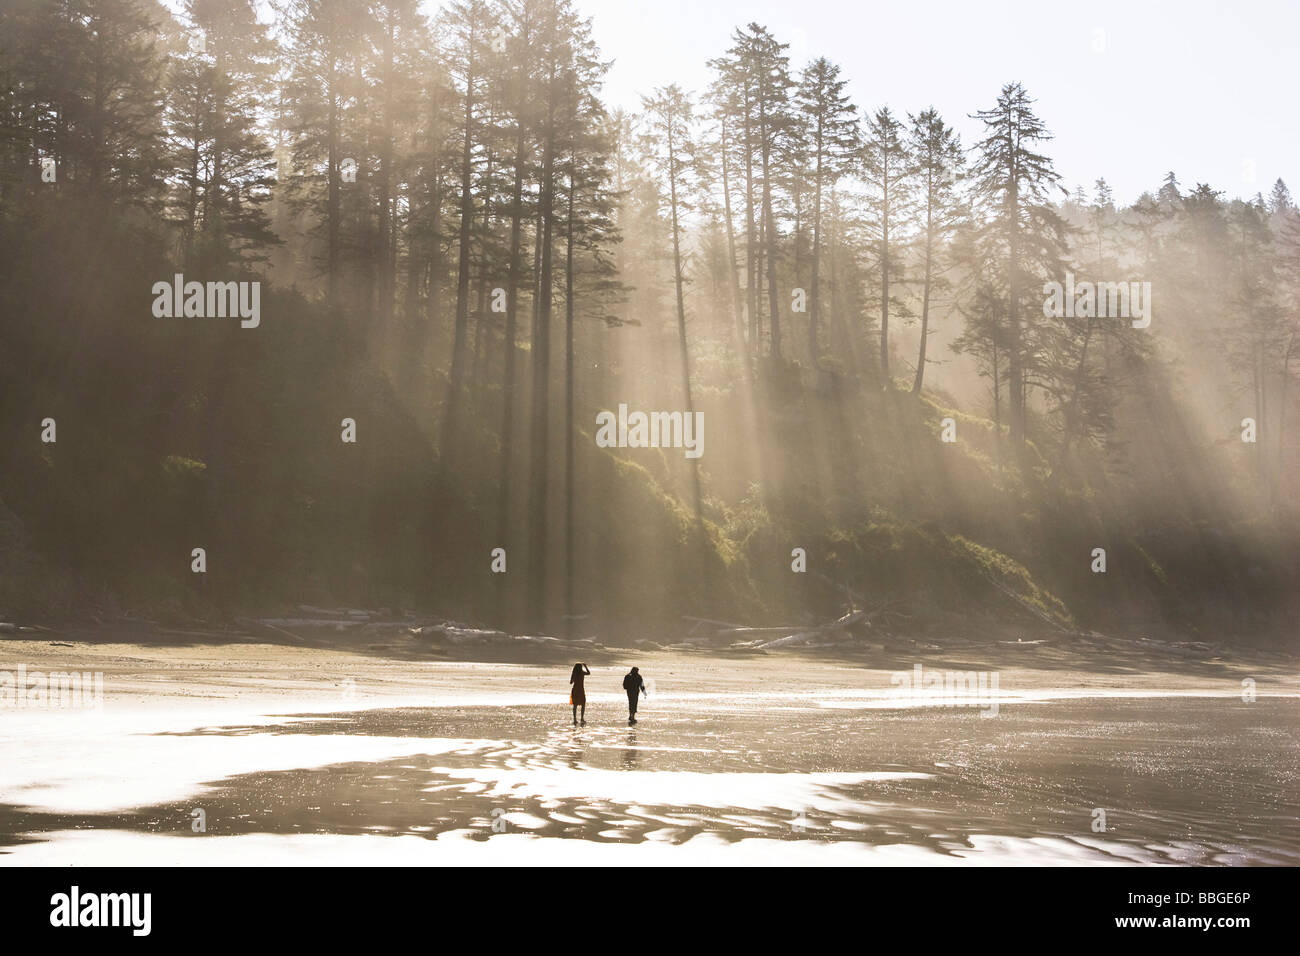 Impressioni di luce sulla costa ovest, pacifico, Penisola Olimpica, Washington, Stati Uniti d'America Foto Stock